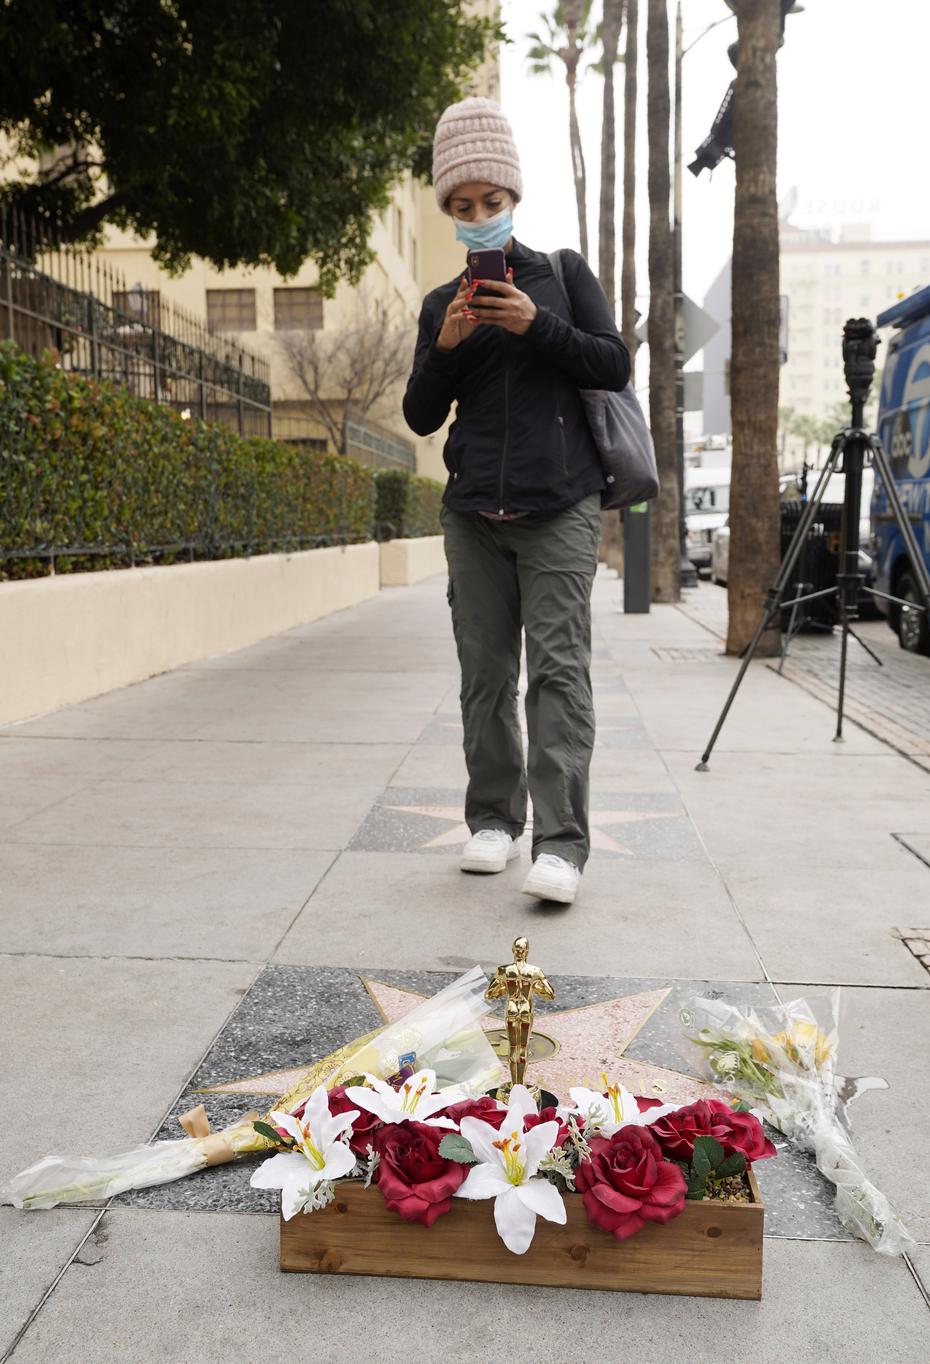 La actriz Tanya Young of Los Angeles toma una fotografía a la estrella del fenecido actor en el Paseo de la Fama de Hollywood. (AP Photo/Chris Pizzello)